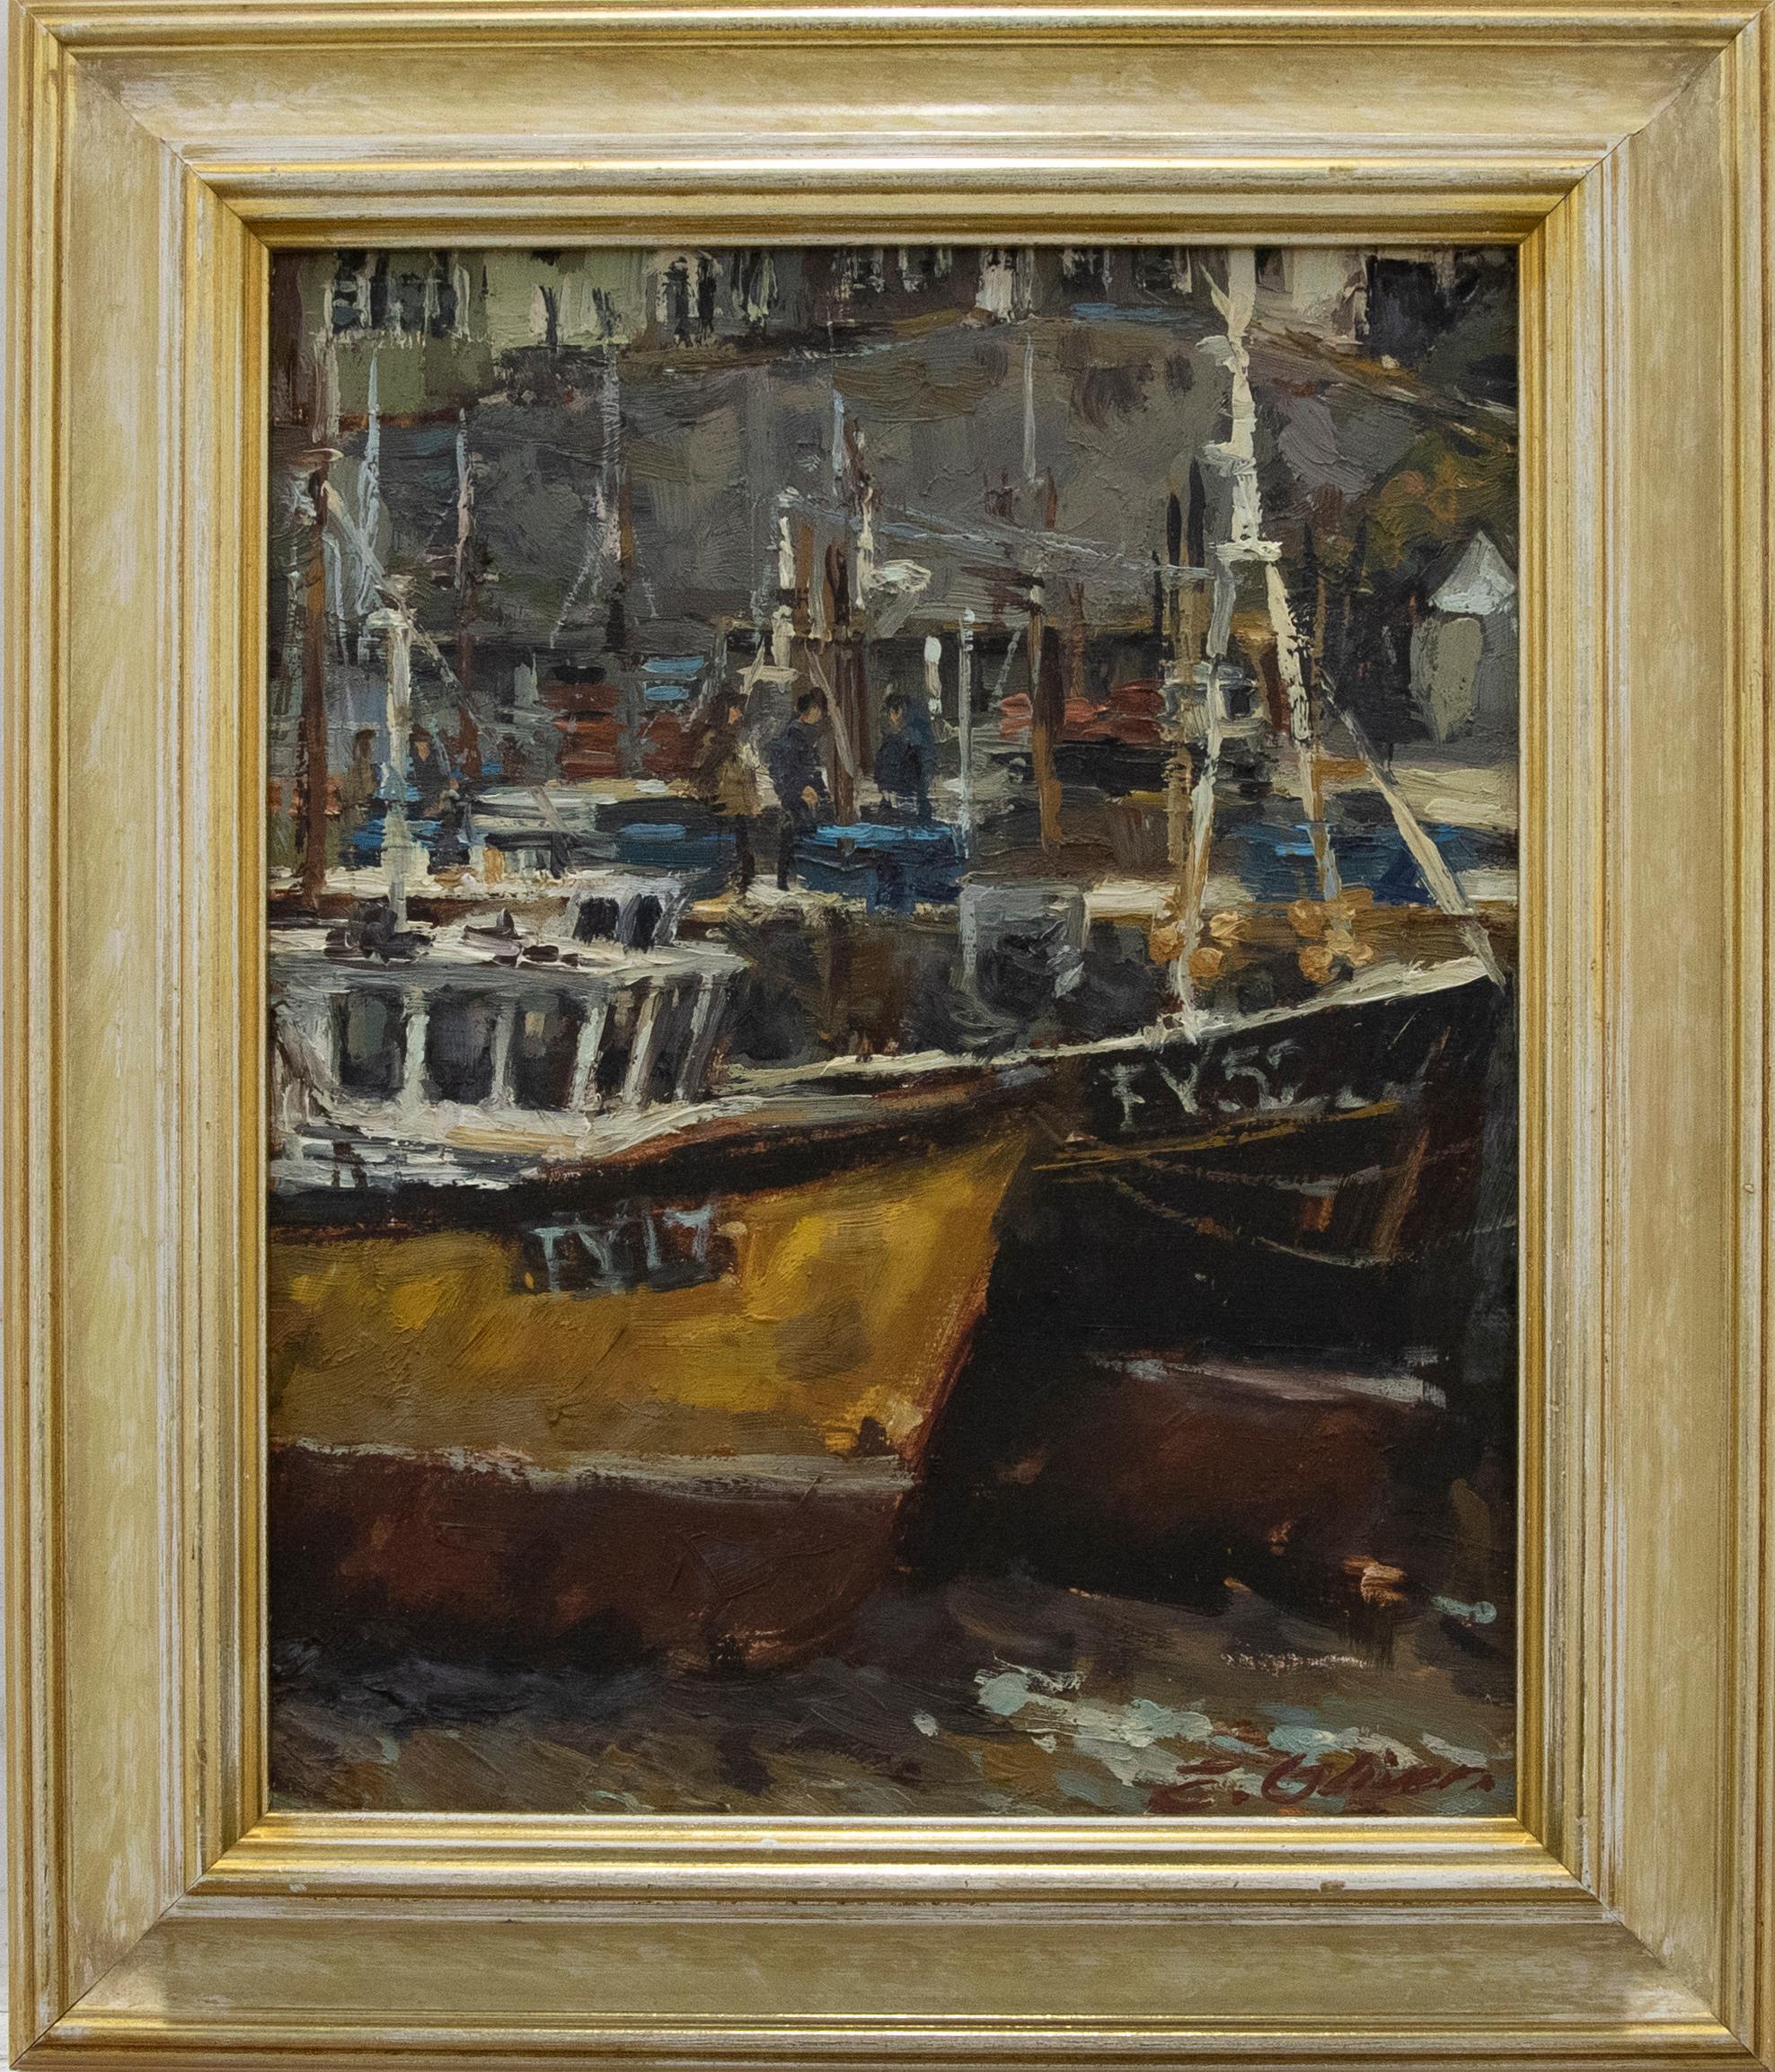 Une magnifique étude impressionniste d'un port de Cornouailles par l'artiste bien connu Ernest Oliver. La scène représente une vue focalisée de deux grands bateaux de pêche échoués dans un port à marée basse. Le corps des bateaux est impressionnant